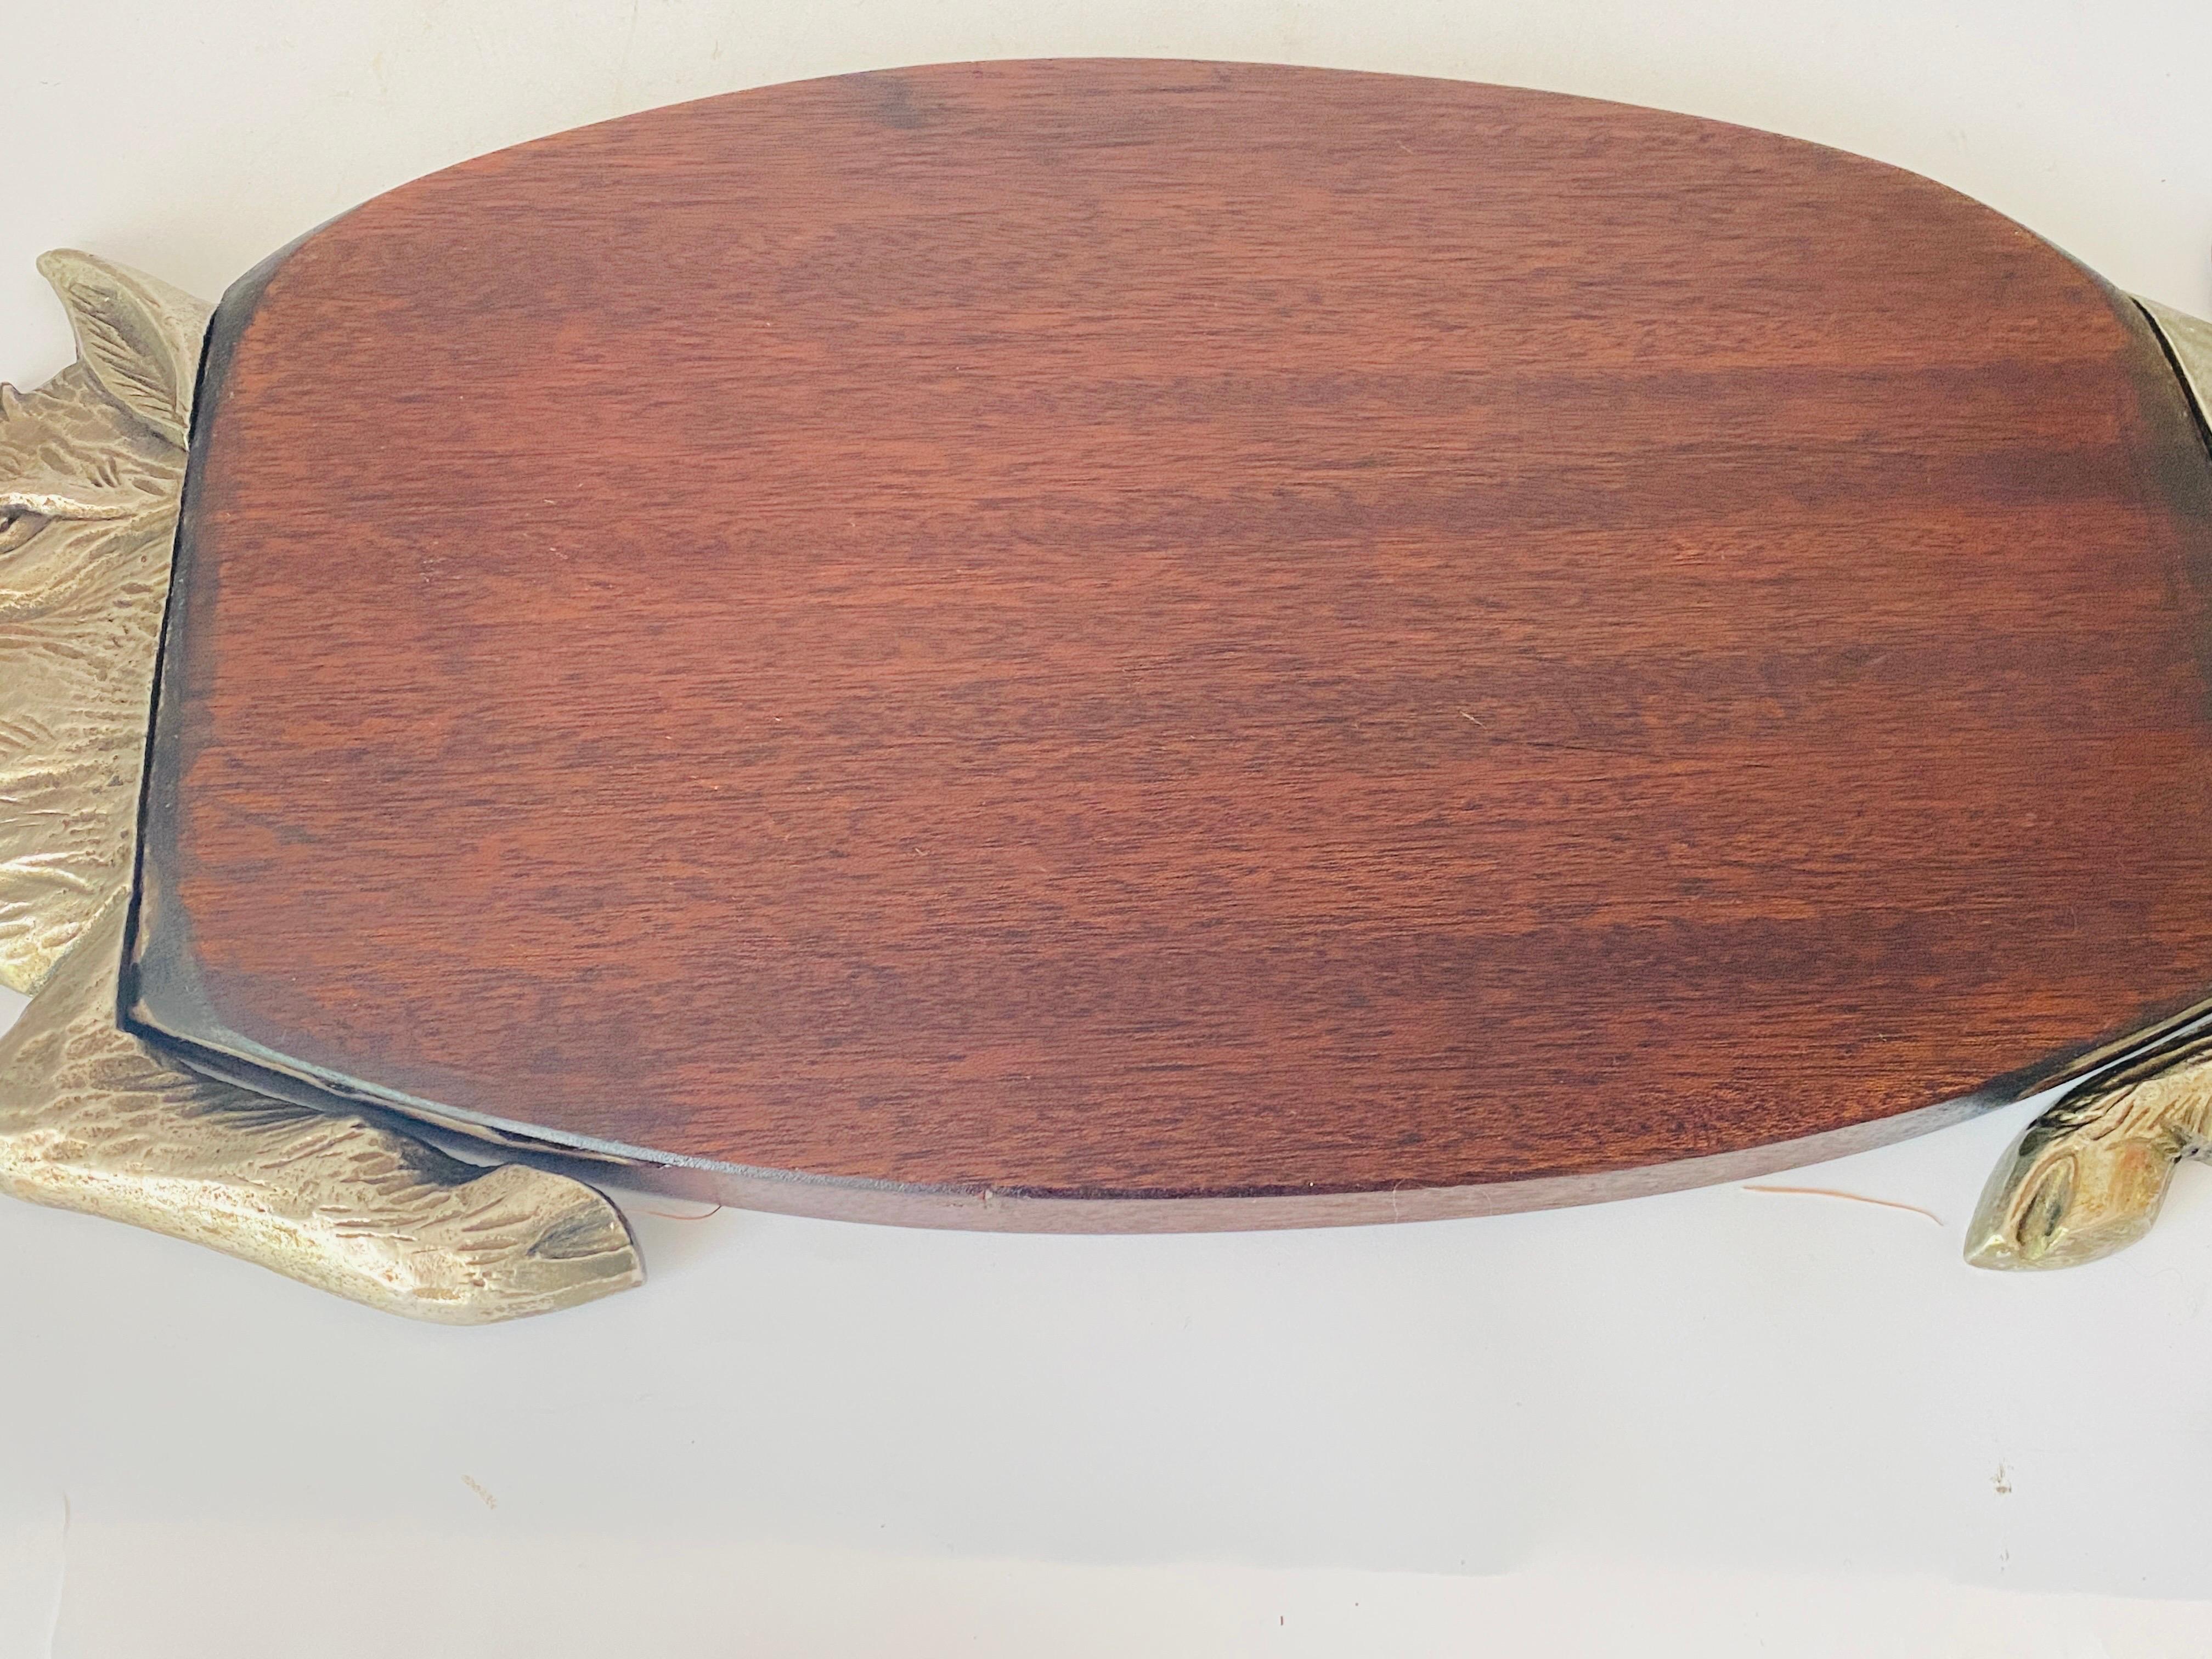 Planche à découper en bois et métal, avec sa patine d'origine. Il s'agit d'un objet du XXe siècle français, dans le style French Provincial de couleur brune, et dans un état correspondant à son âge et à son utilisation.